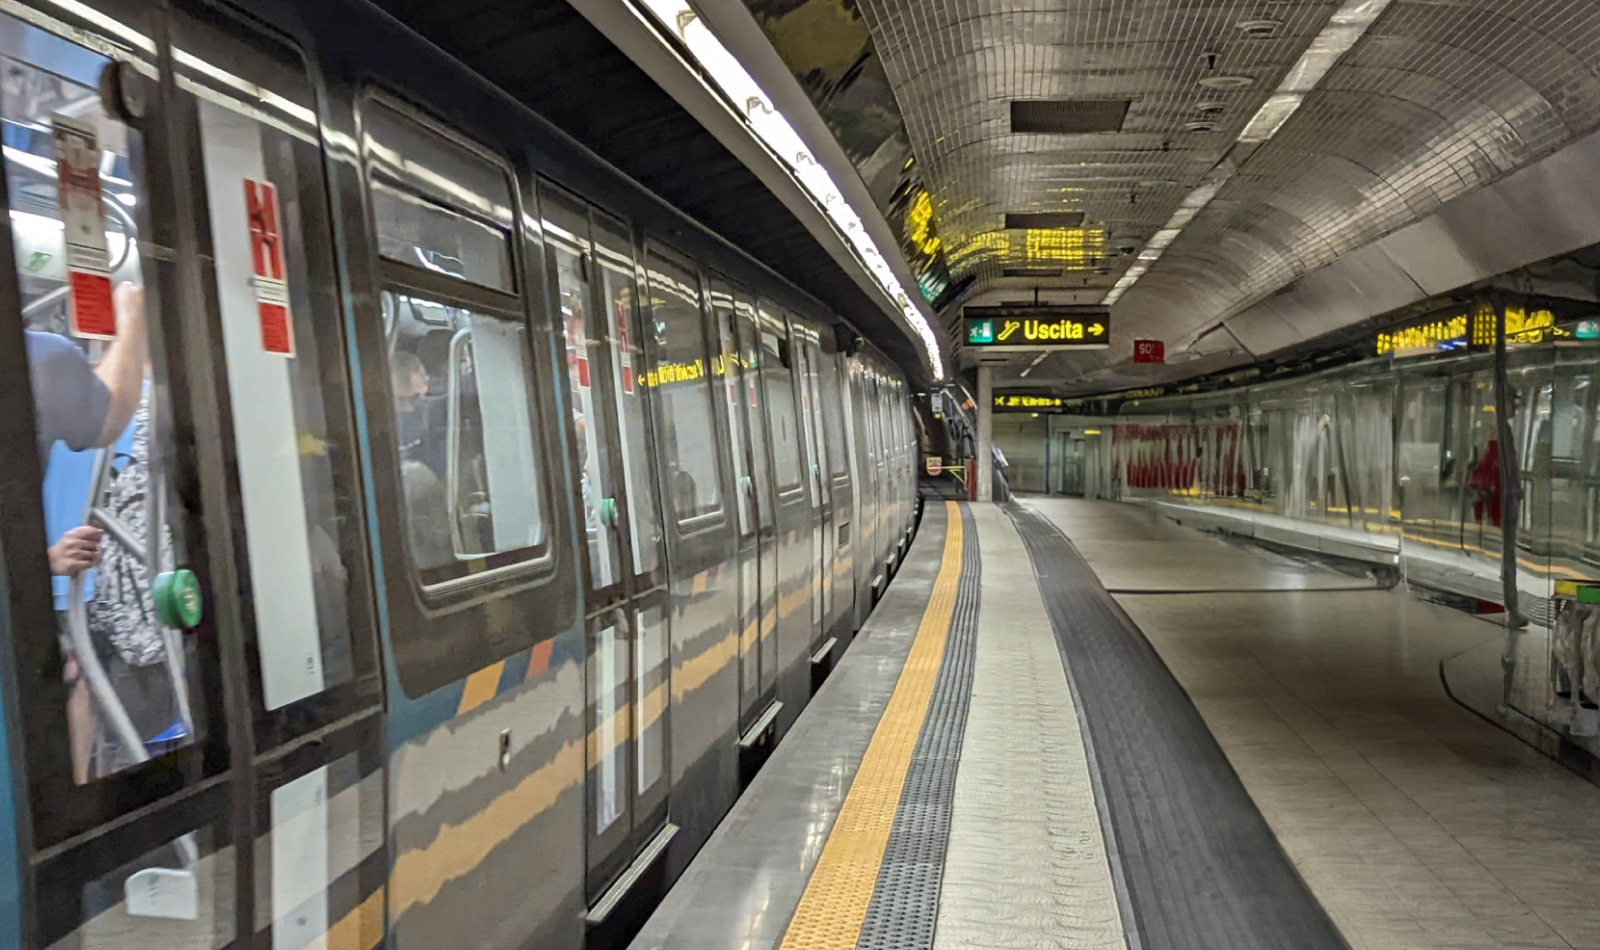 1 Line of the Naples Metro